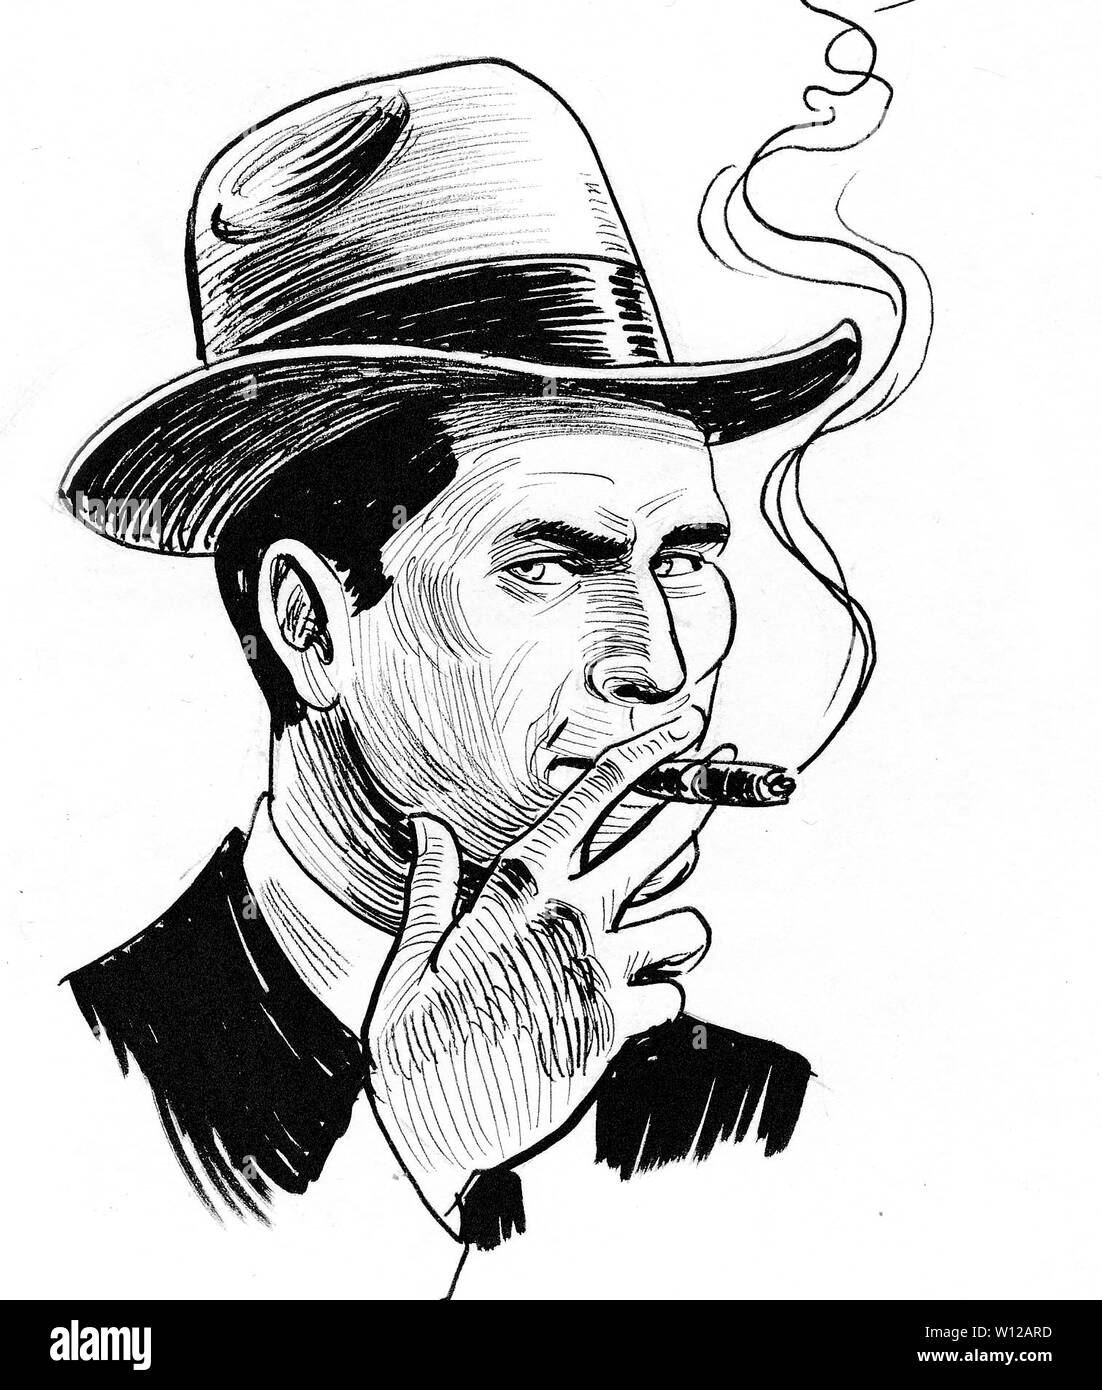 Мужчина с сигарой нарисованный